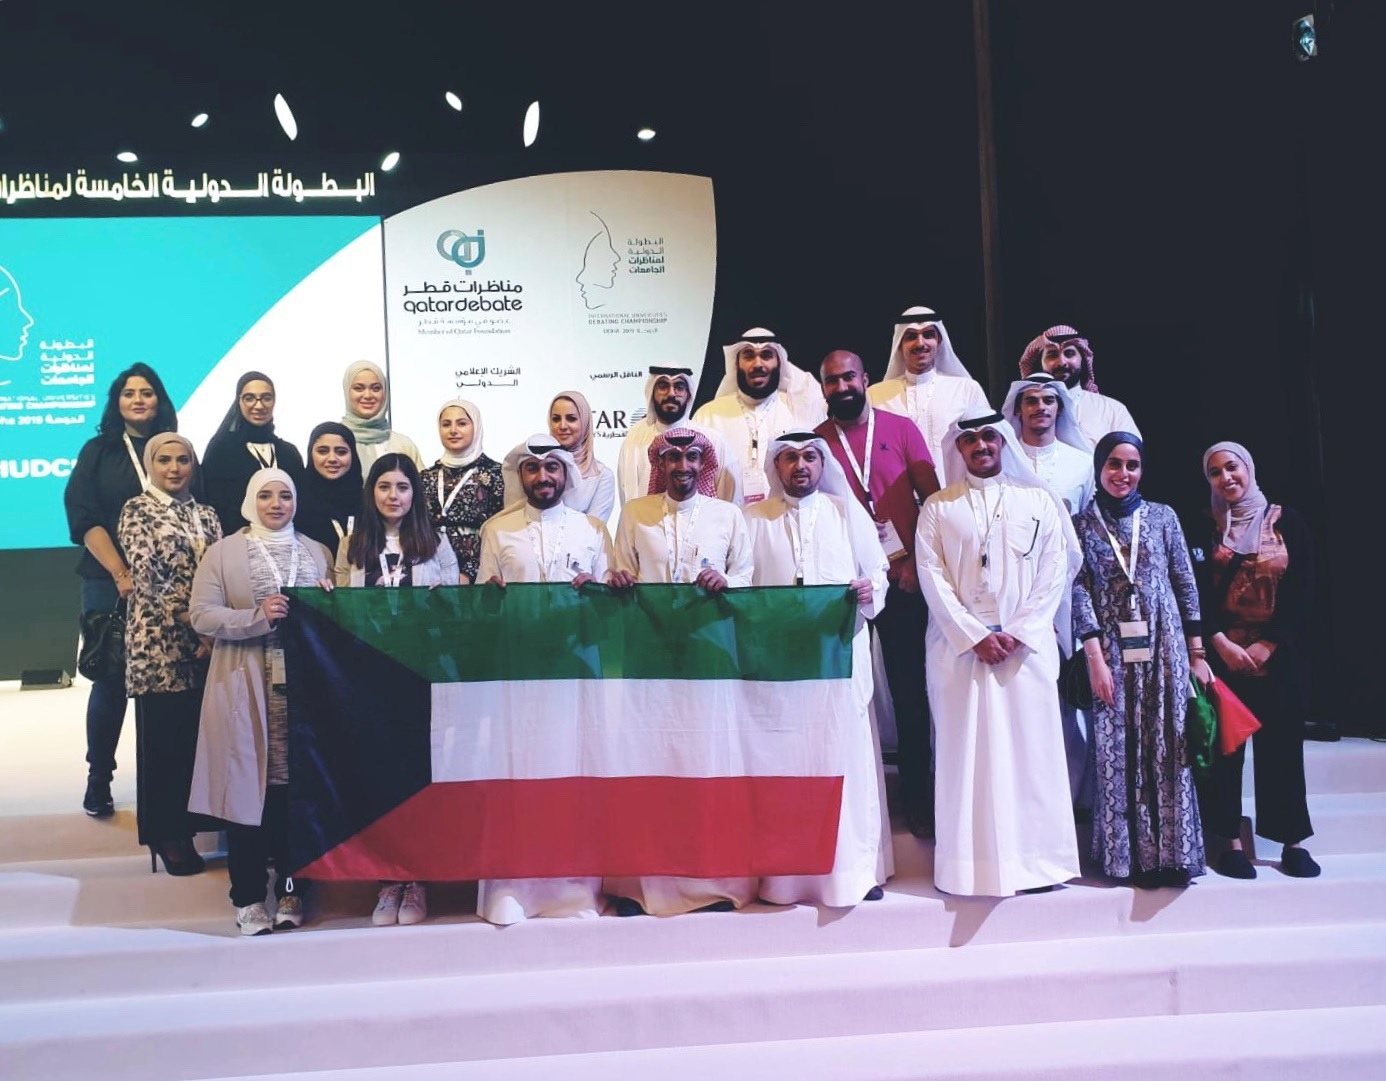 فريقان كويتيان يمثلان جامعة الكويت وجامعة الخليج للعلوم والتكنولوجيا يتأهلان الى الدور قبل ال16 ضمن منافسات النسخة الخامسة من البطولة الدولية لمناظرات الجامعات باللغة العربية